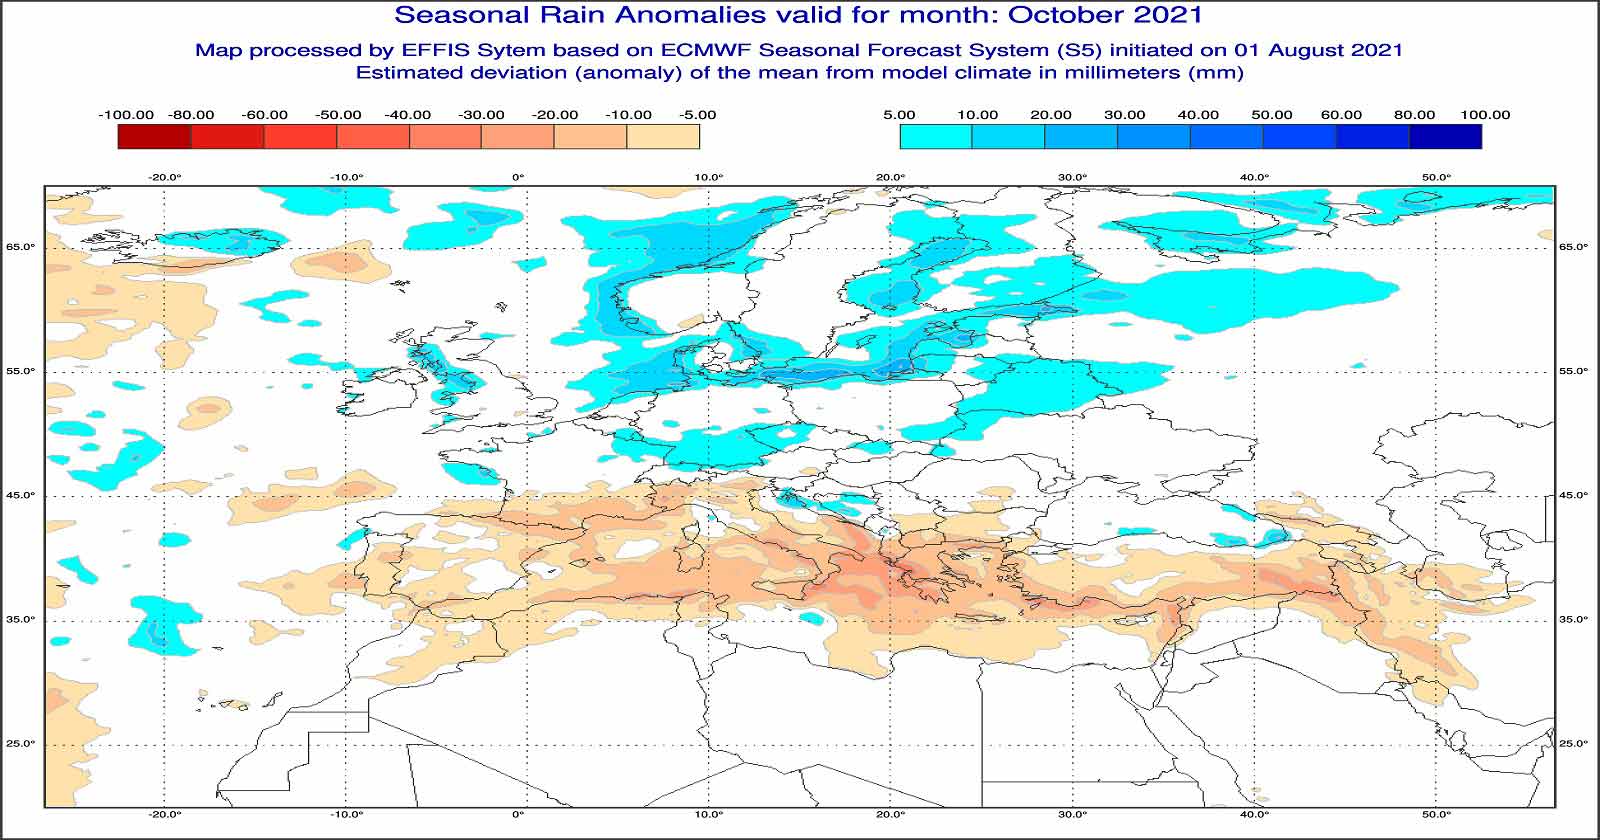 Anomalie di precipitazione previste dal modello ECMWF per ottobre 2021 - effis.jrc.ec.europa.eu